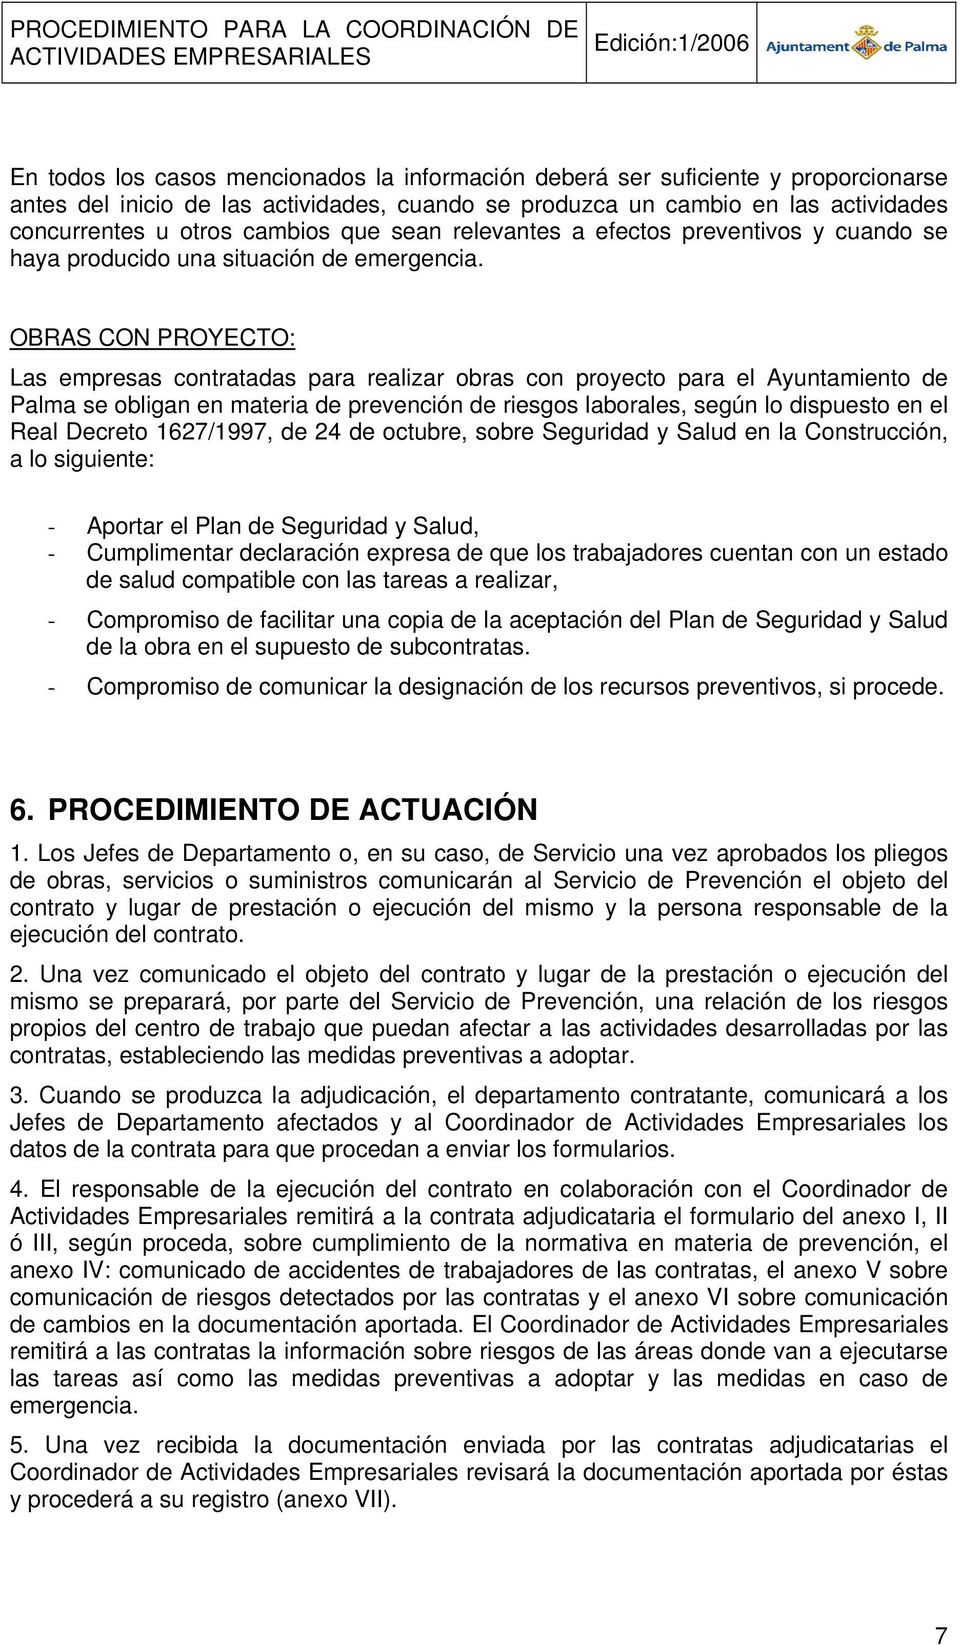 OBRAS CON PROYECTO: Las empresas contratadas para realizar obras con proyecto para el Ayuntamiento de Palma se obligan en materia de prevención de riesgos laborales, según lo dispuesto en el Real